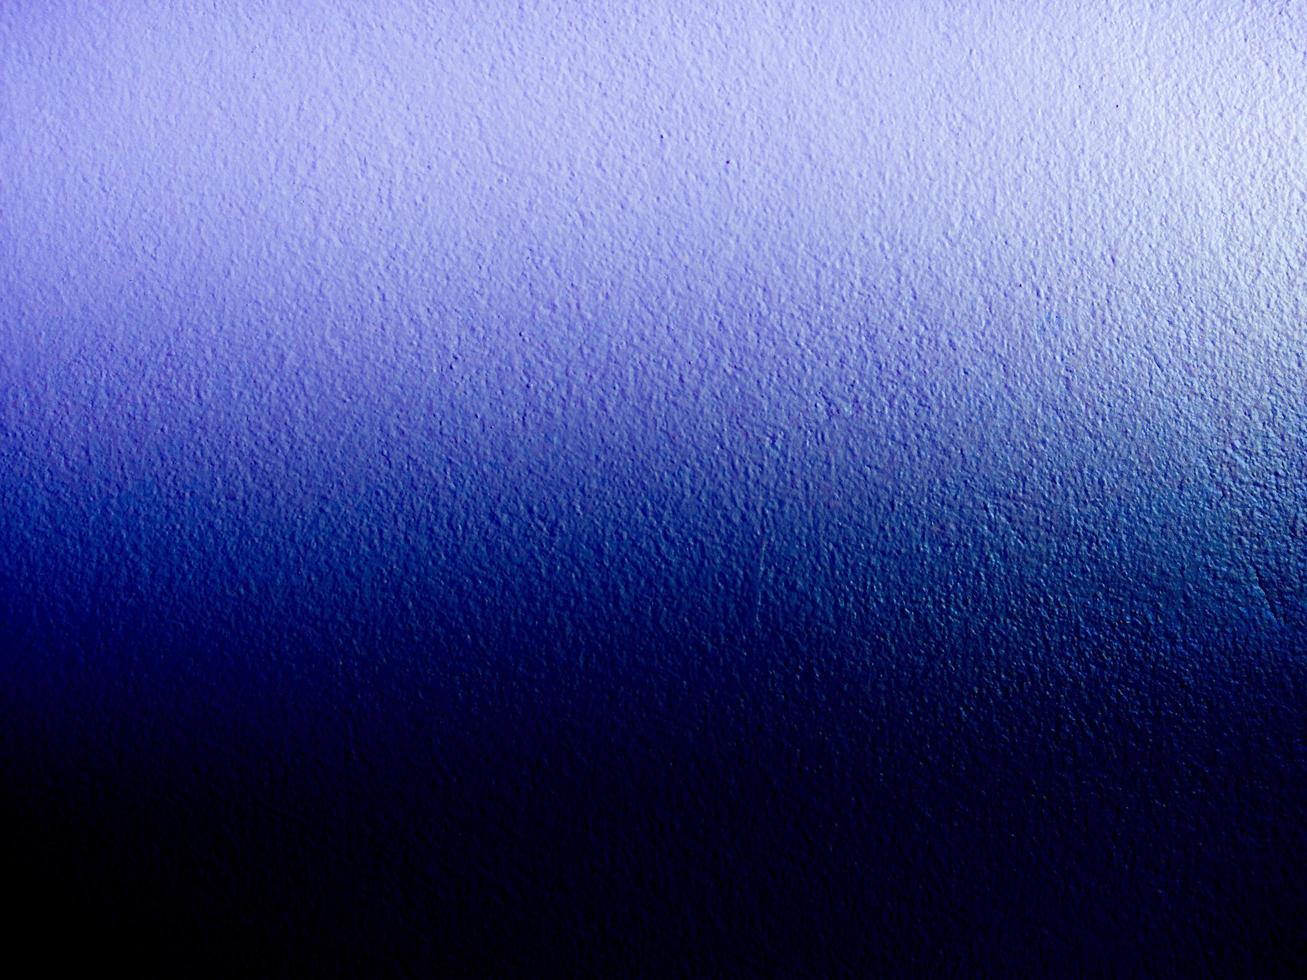 Die Wände sind grob blau mit einem schwarzen Farbverlauf. Hintergrund Hintergrund-Design-Vorlage foto